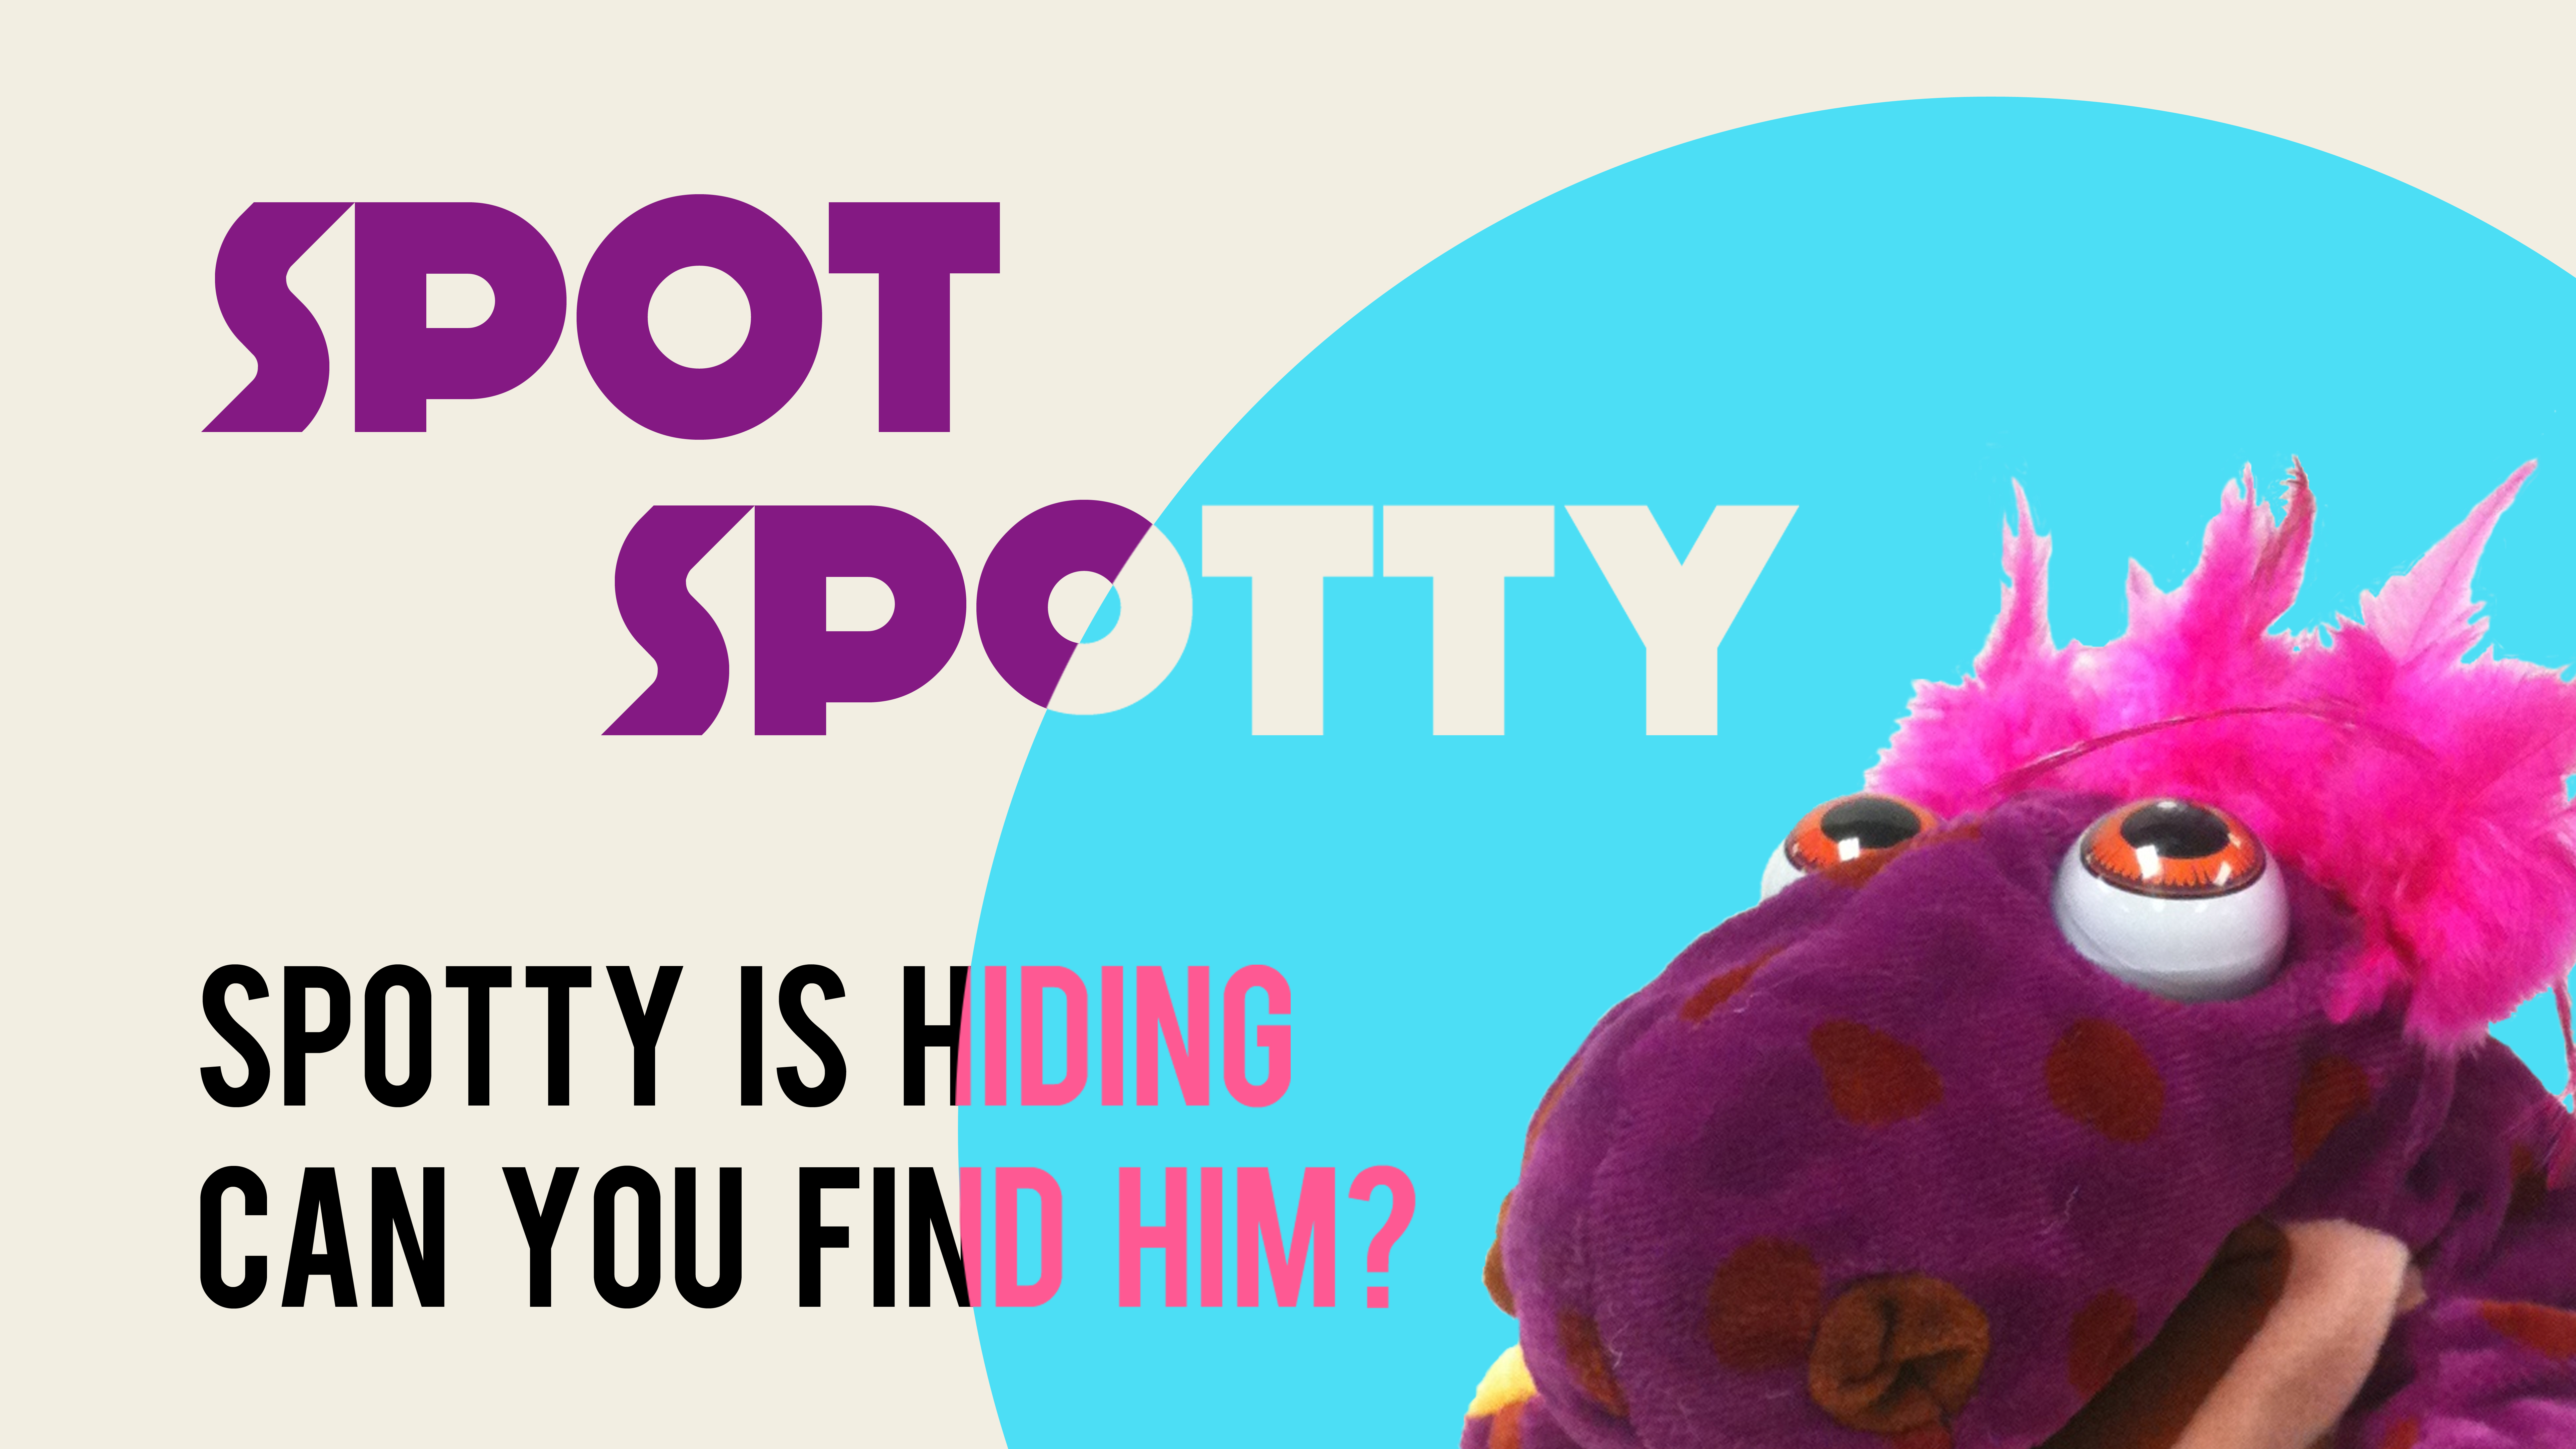 Spot Spotty!